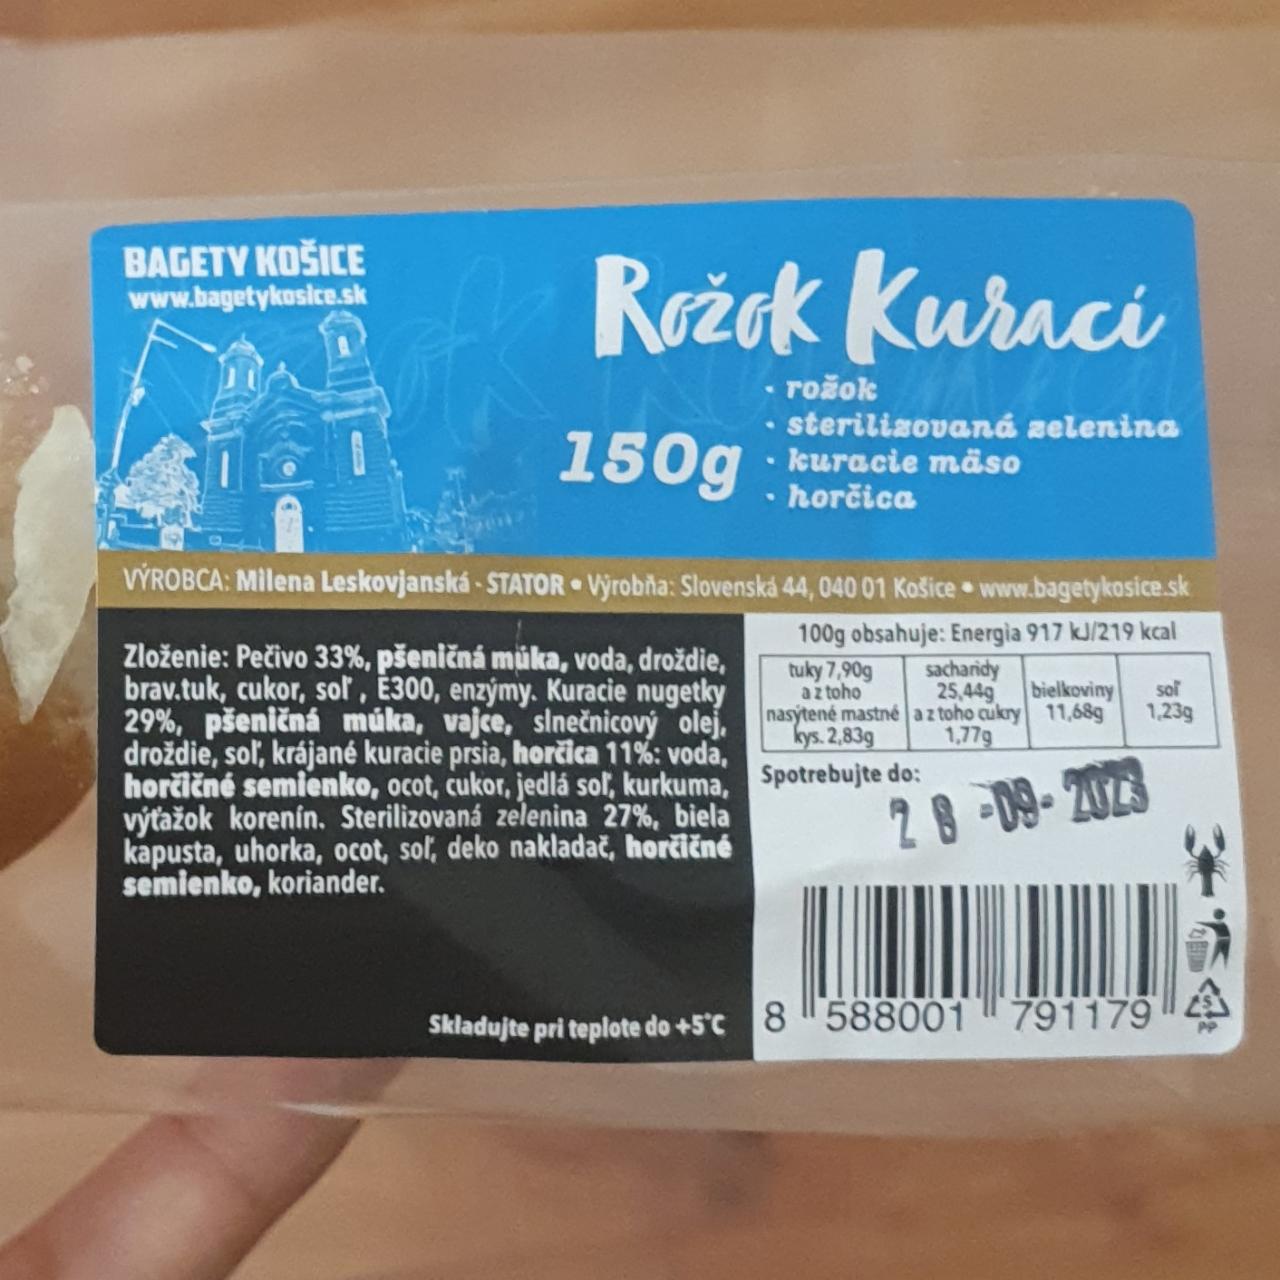 Fotografie - Rožok Kurací Bagety Košice